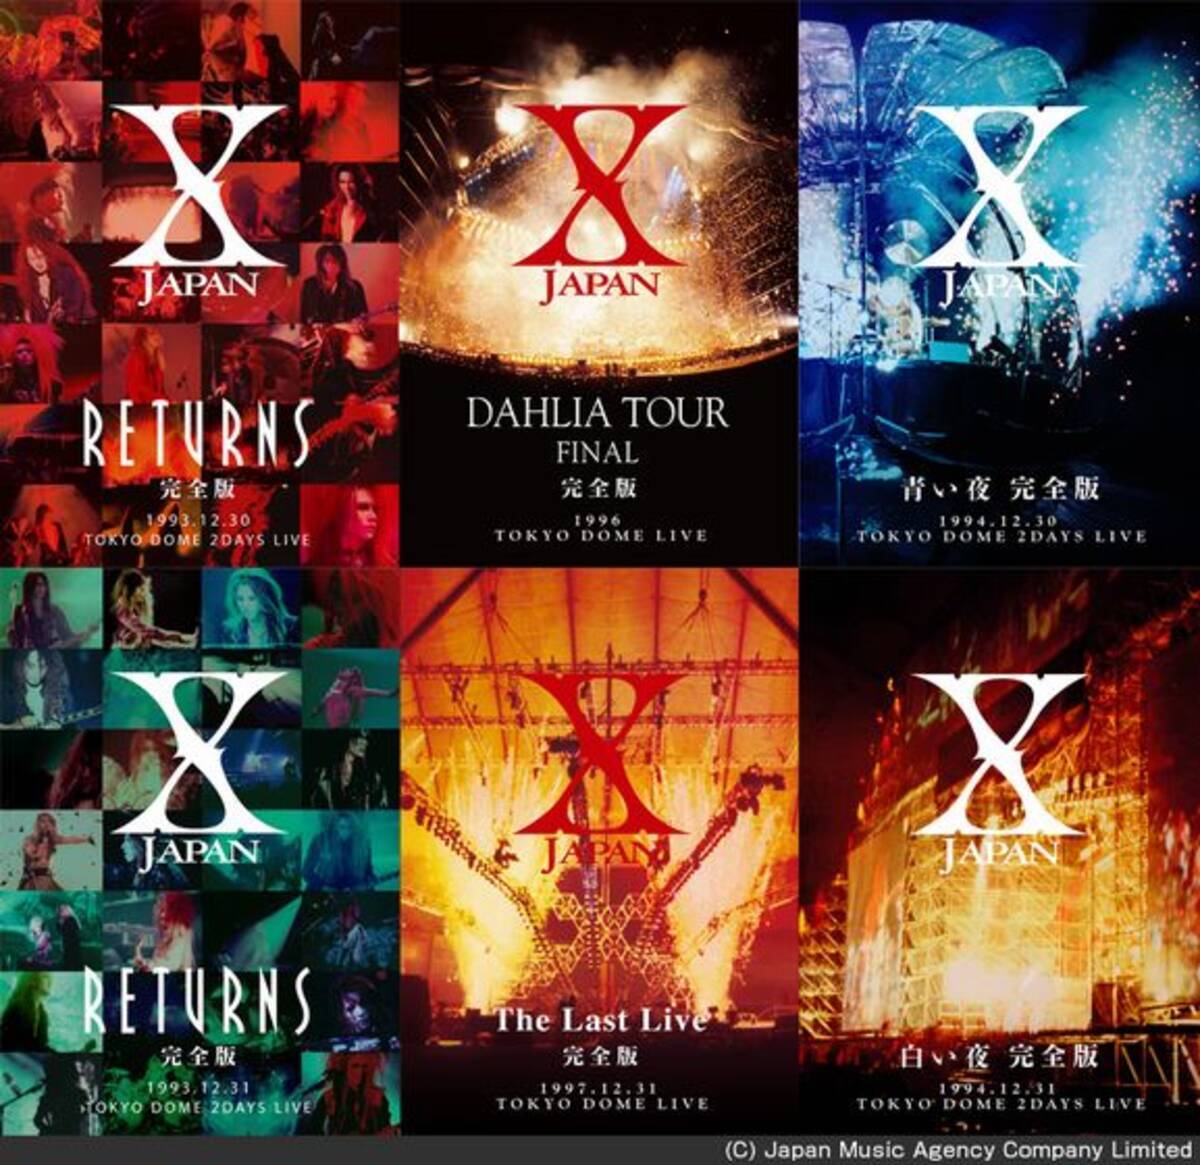 X Japan 伝説 の解散ライブ映像など6本を配信 Yoshikiとtoshl の感動シーンが再び 14年9月10日 エキサイトニュース